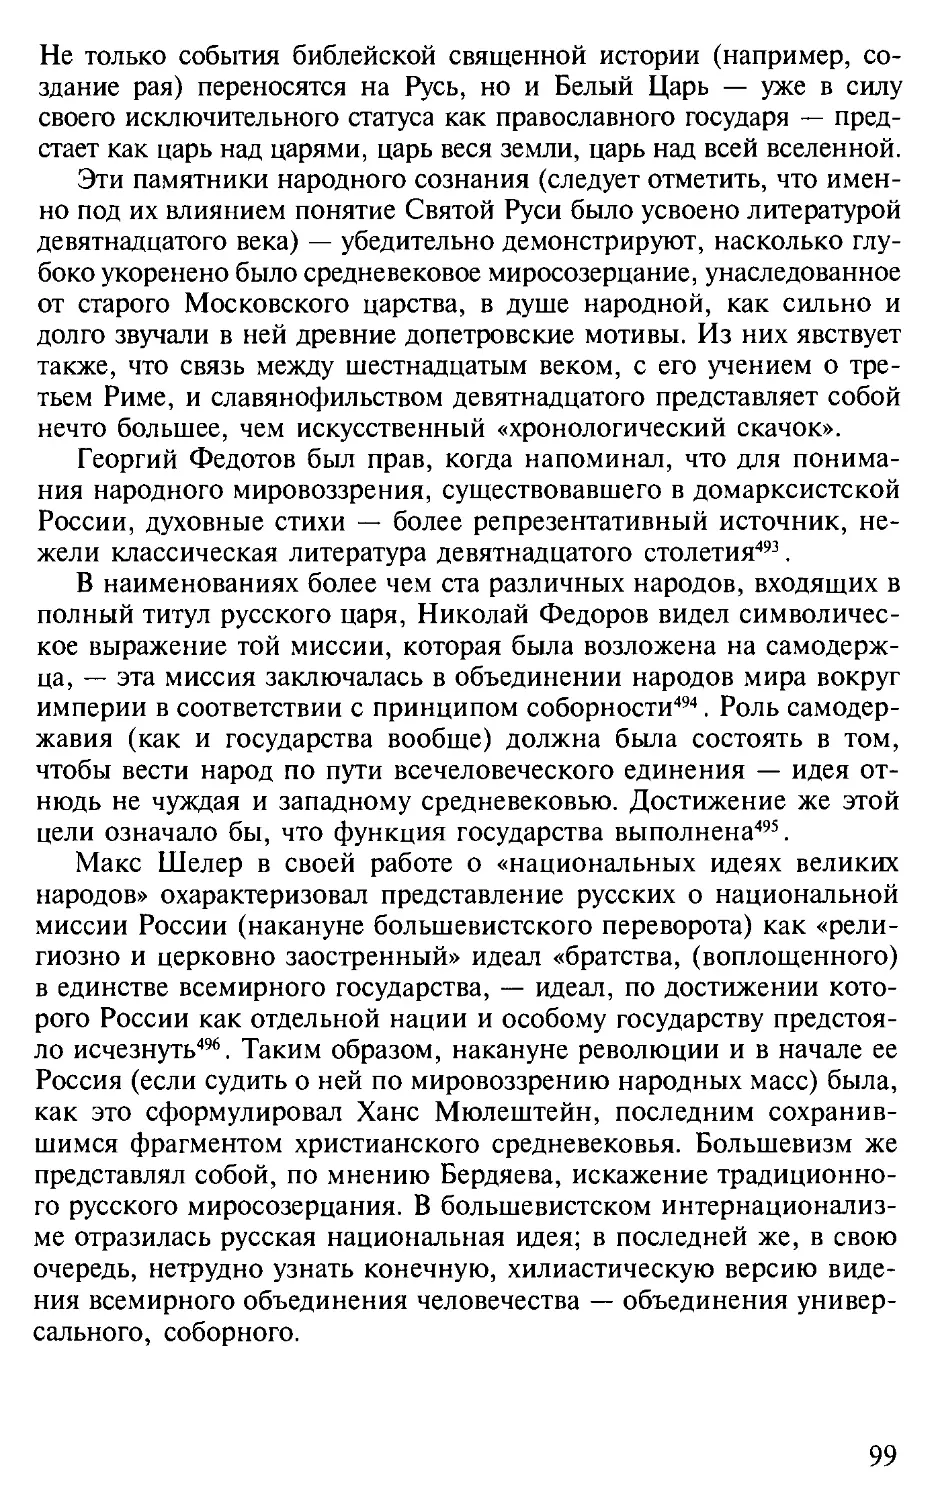 Глава 10. Идея соборности в русском православии. Единство бытия, принцип коллективного спасения и русское видение социализма